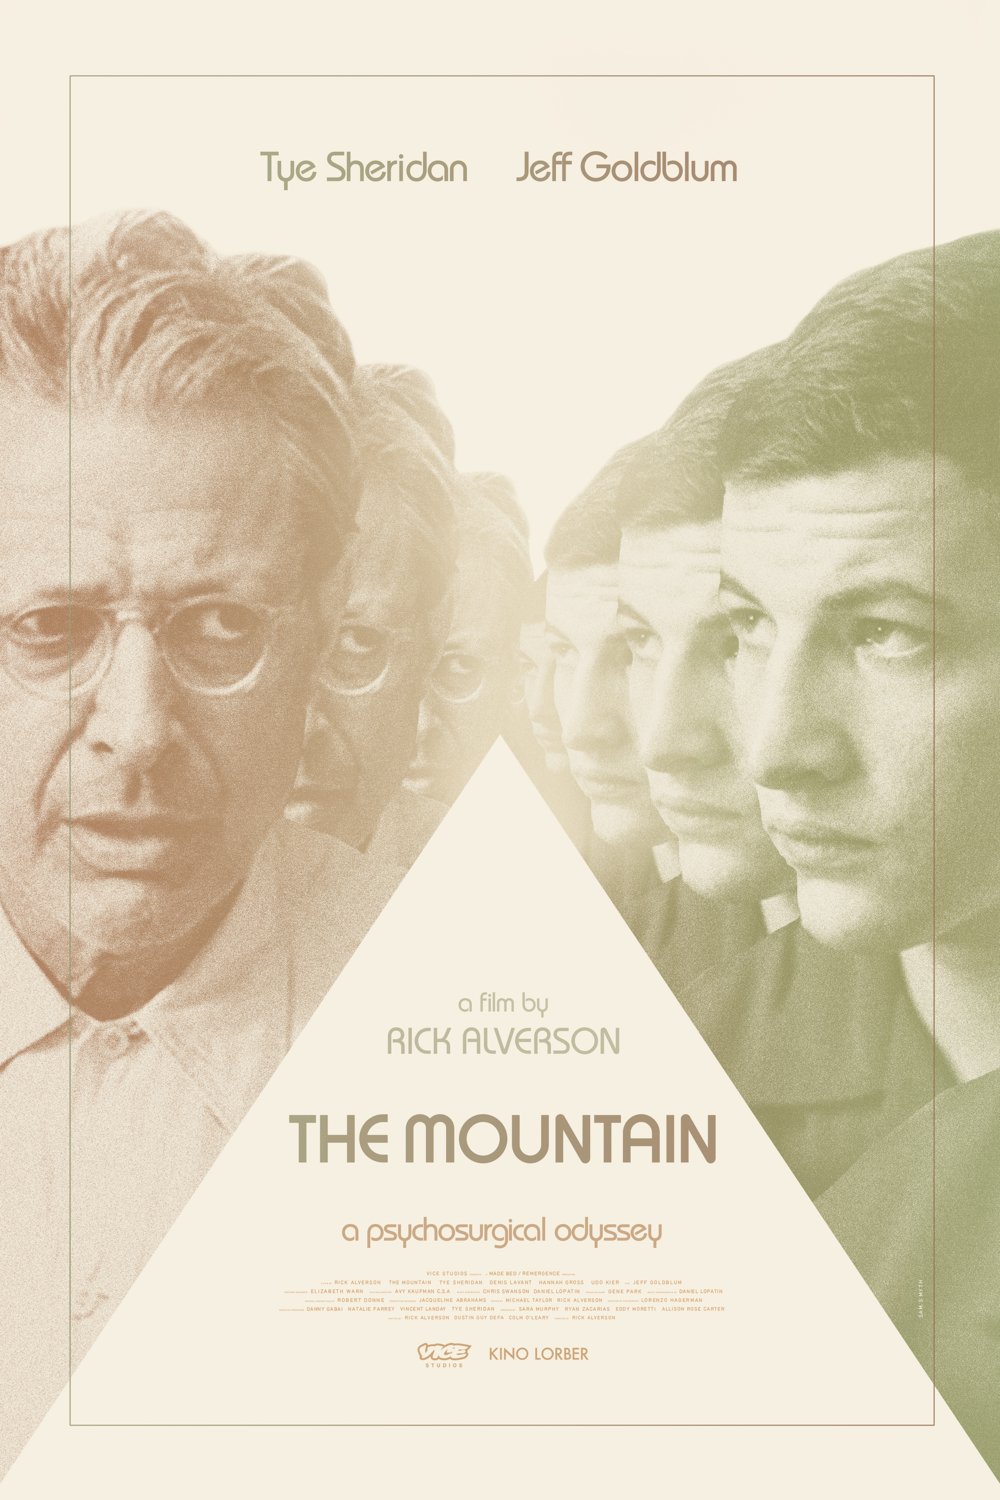 L'affiche du film The Mountain